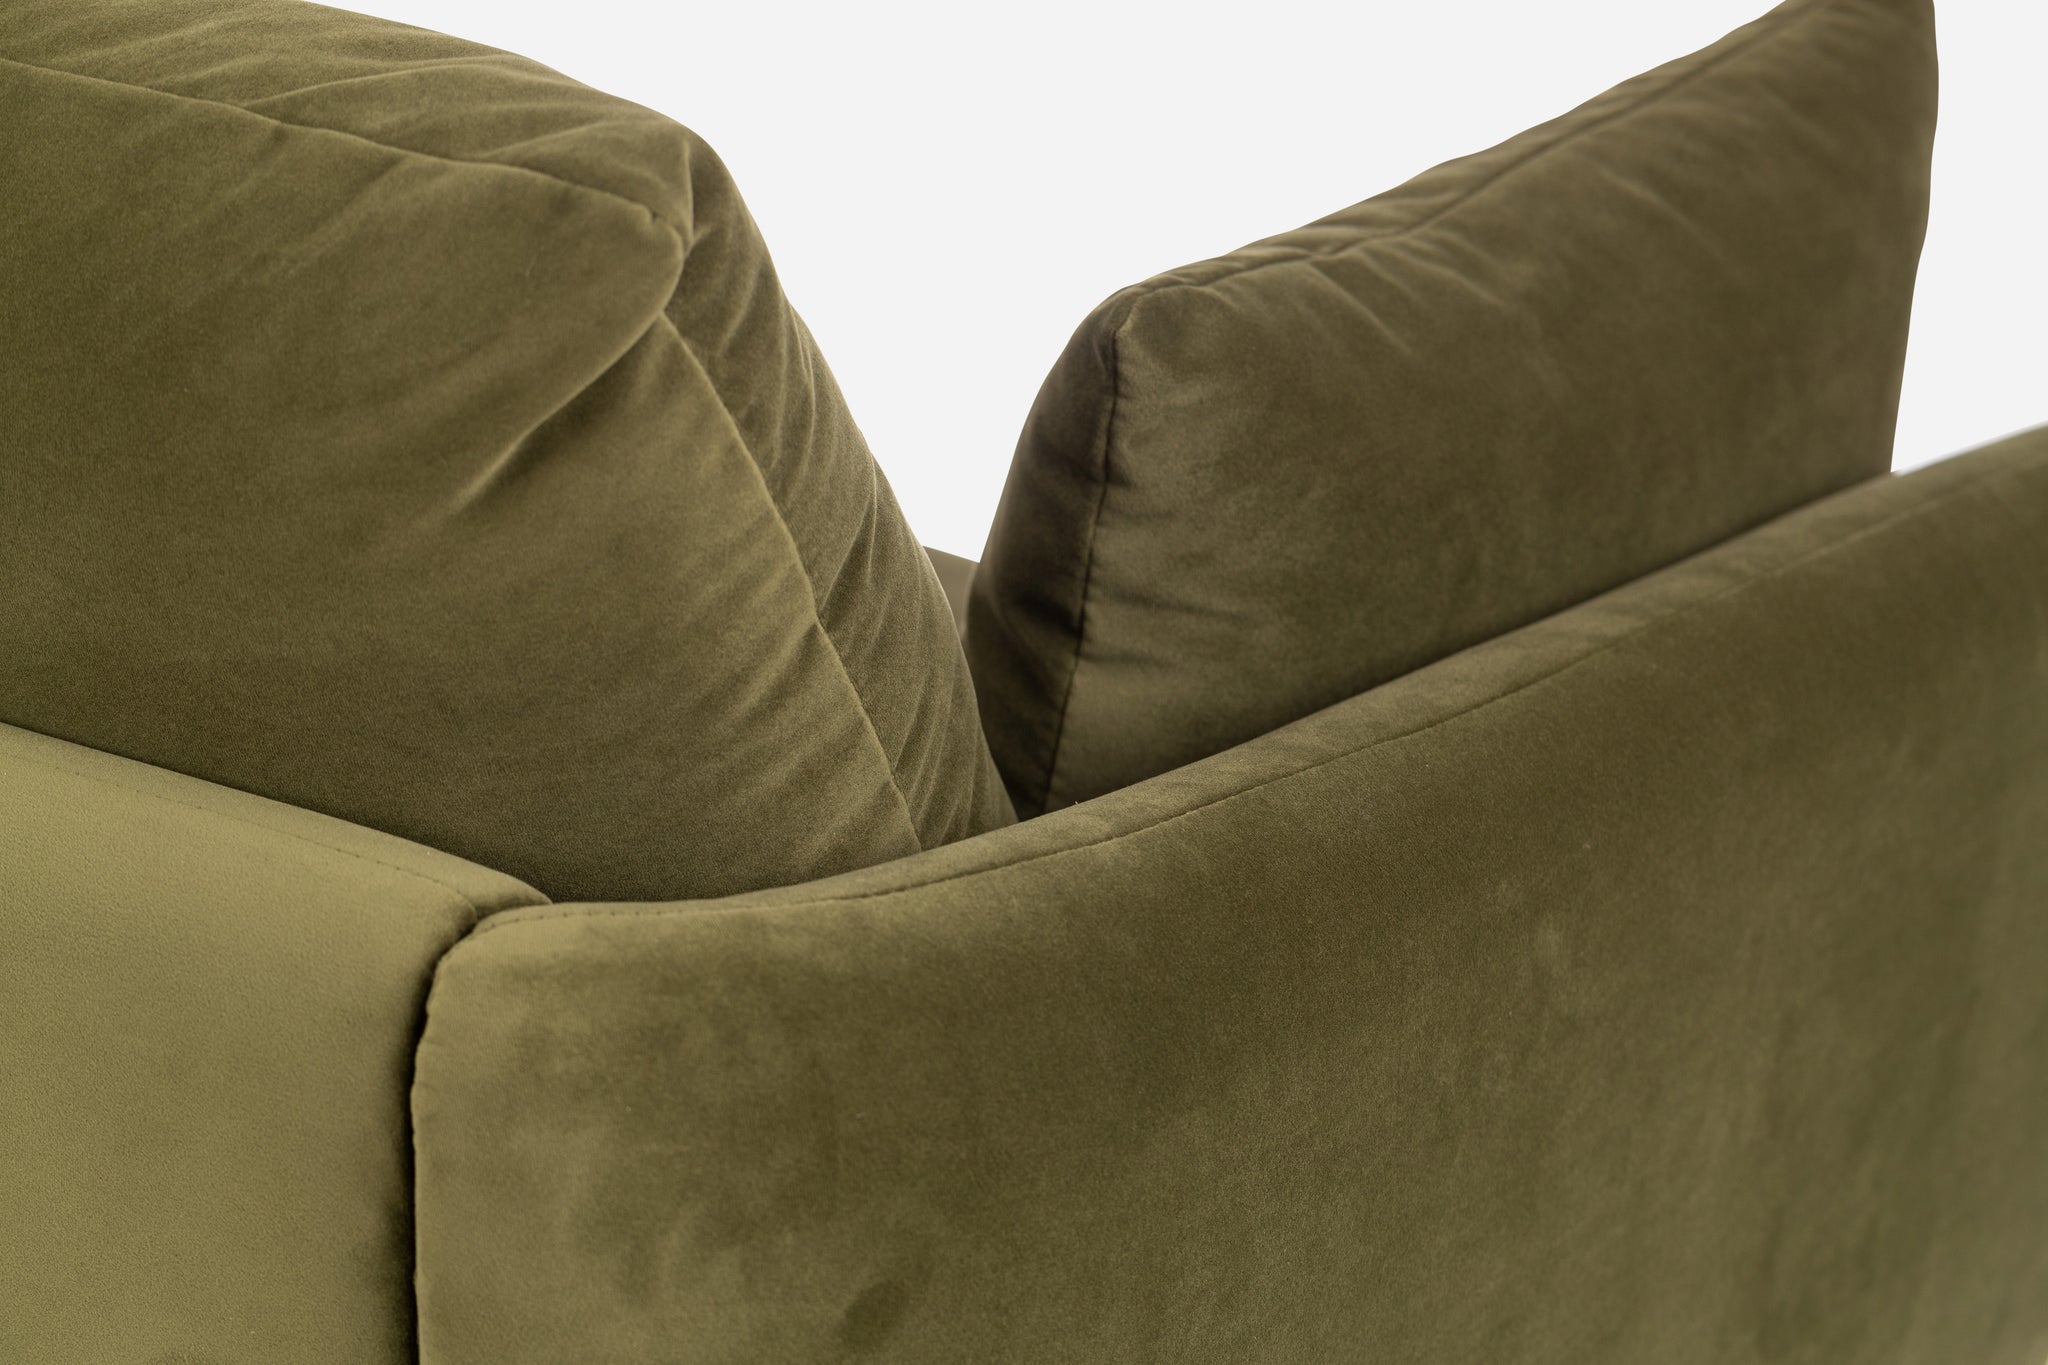 park sofa shown in olive velvet with black legs